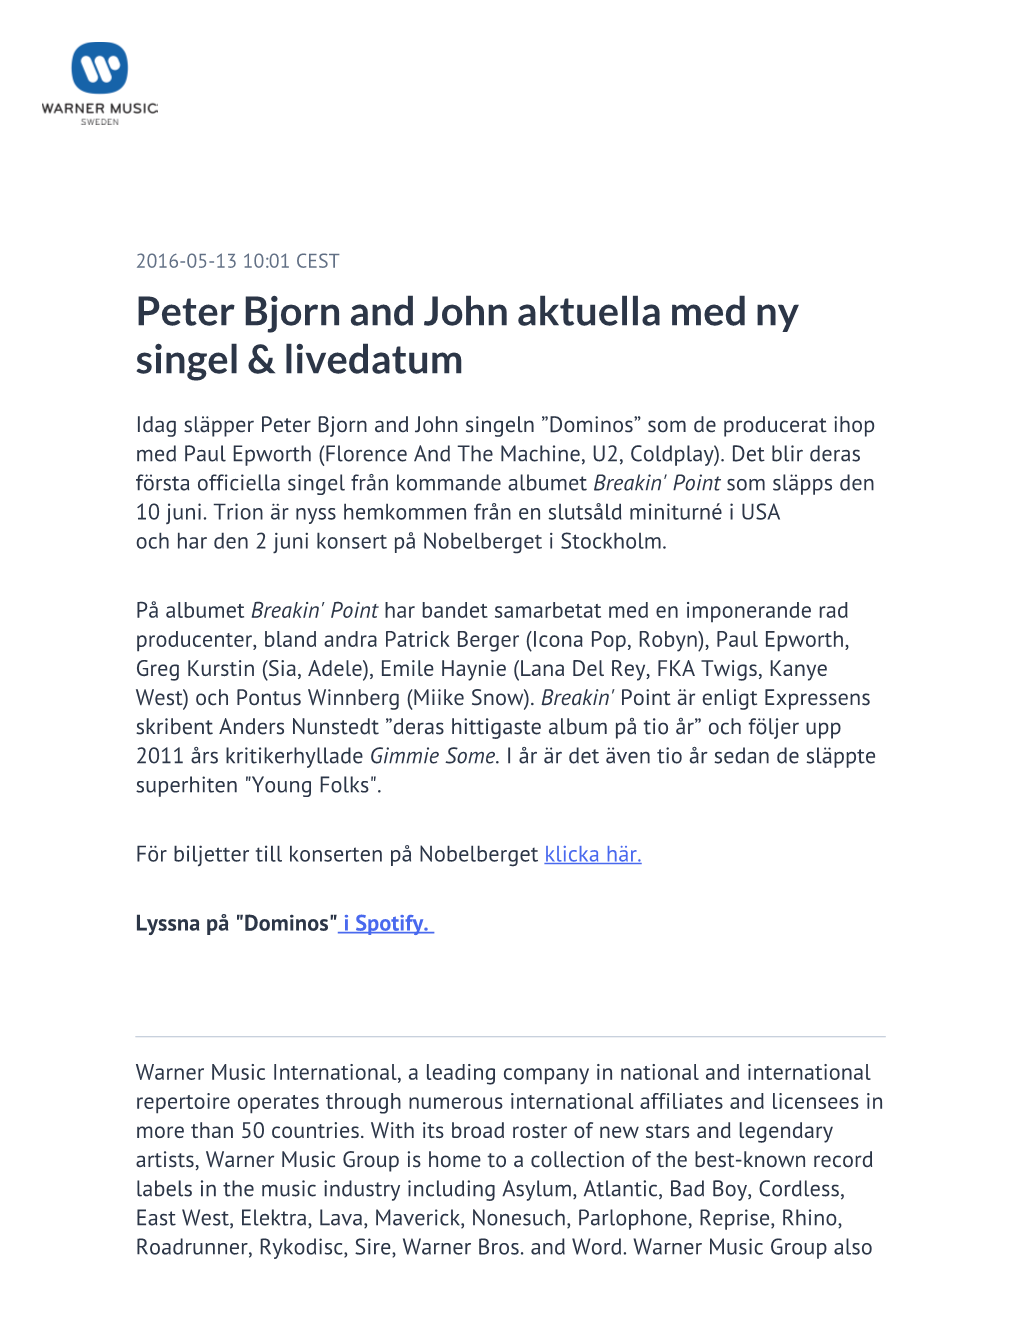 ​Peter Bjorn and John Aktuella Med Ny Singel